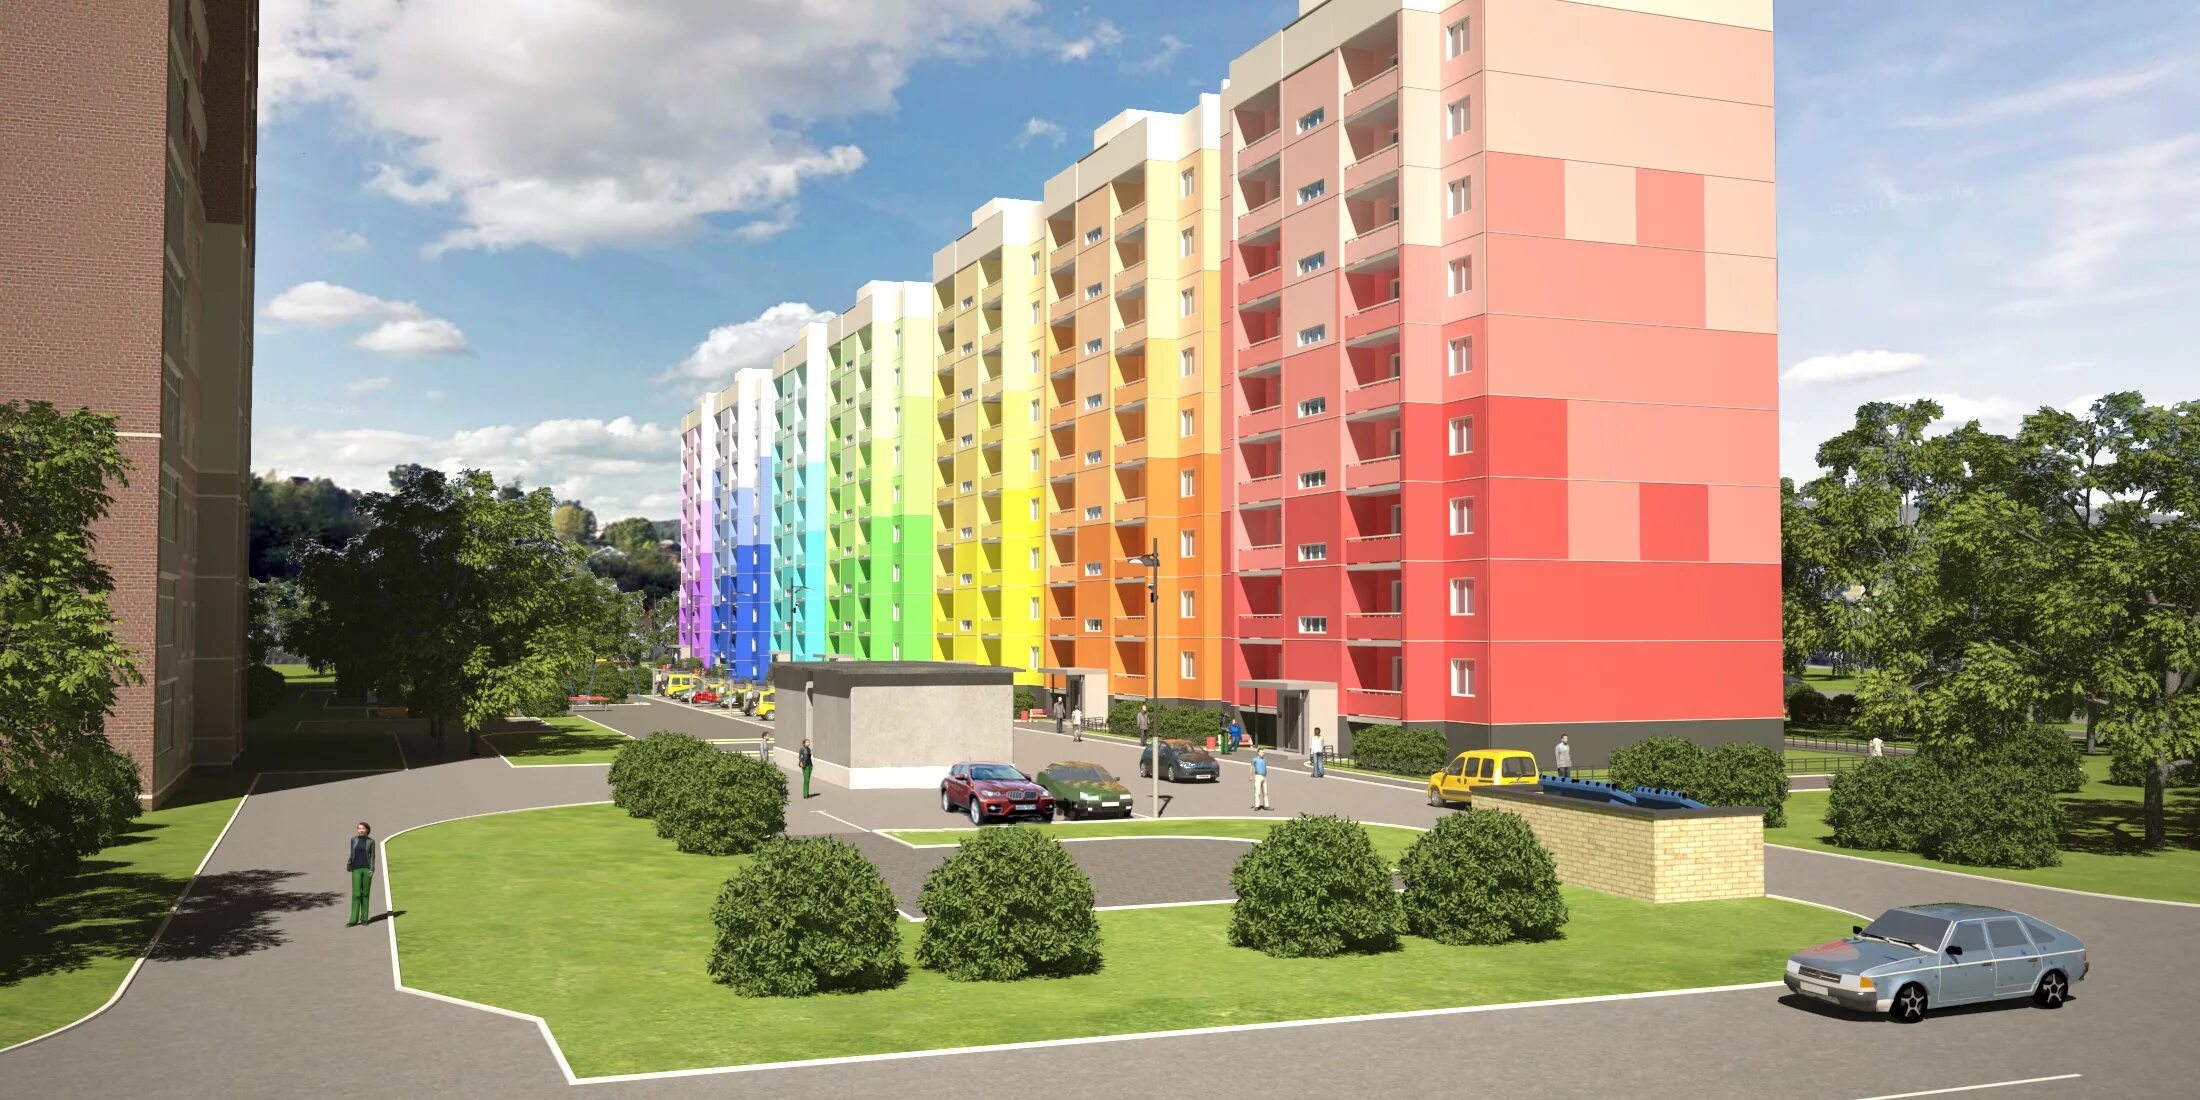 Жк 0 1. Цветовое решение фасадов жилых домов. Фасады многоэтажных домов цветовые решения. Цветовое решение фасадов многоэтажных жилых домов. Цветные фасады многоэтажных домов.